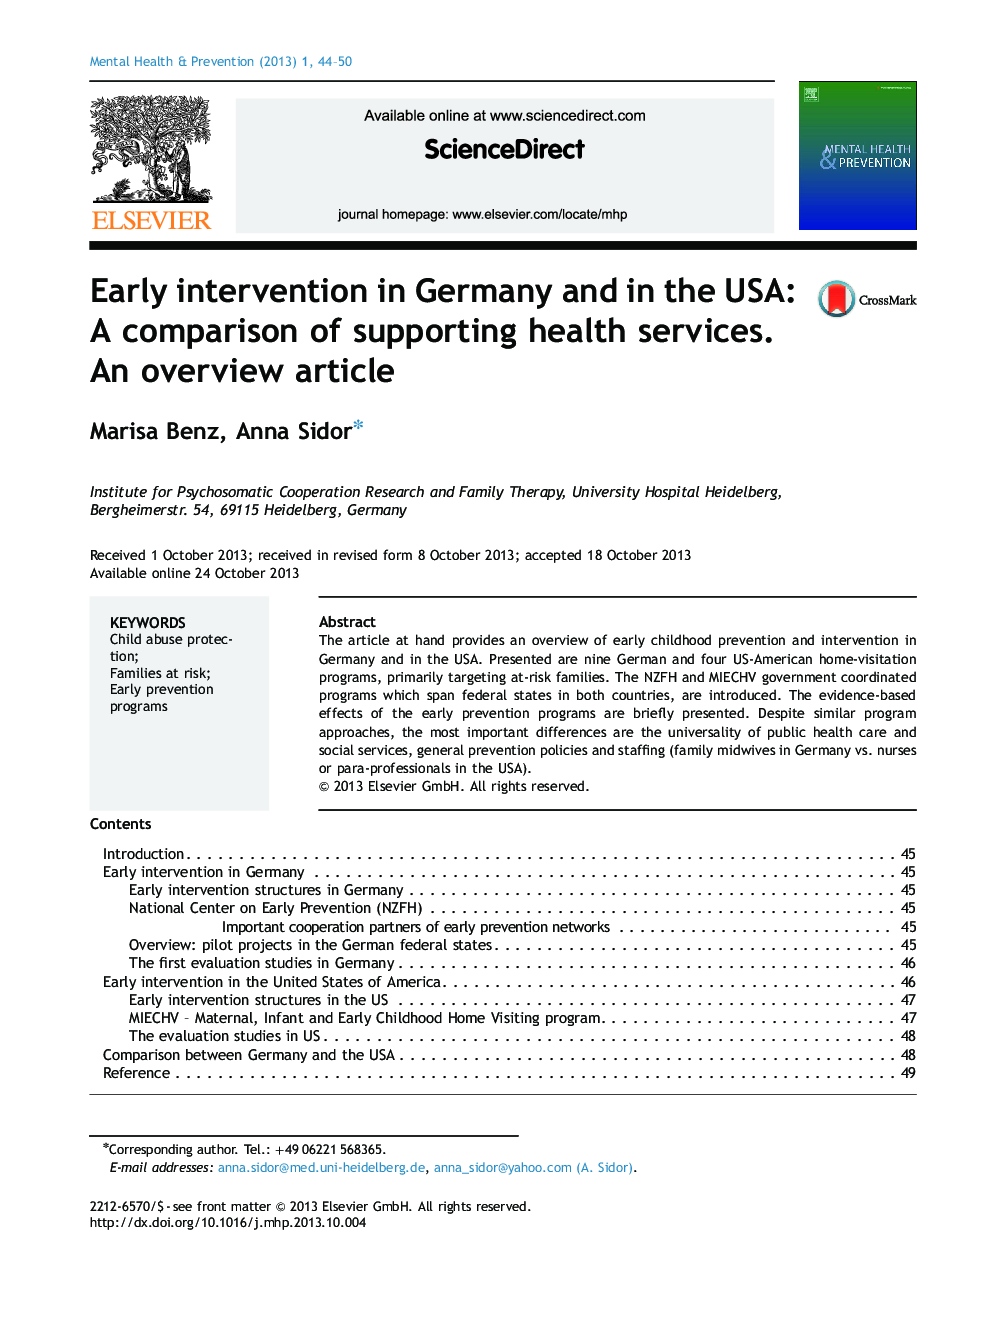 مداخله زودهنگام در آلمان و ایالات متحده آمریکا: مقایسه حمایت از خدمات بهداشتی؛ یک مقاله کلی